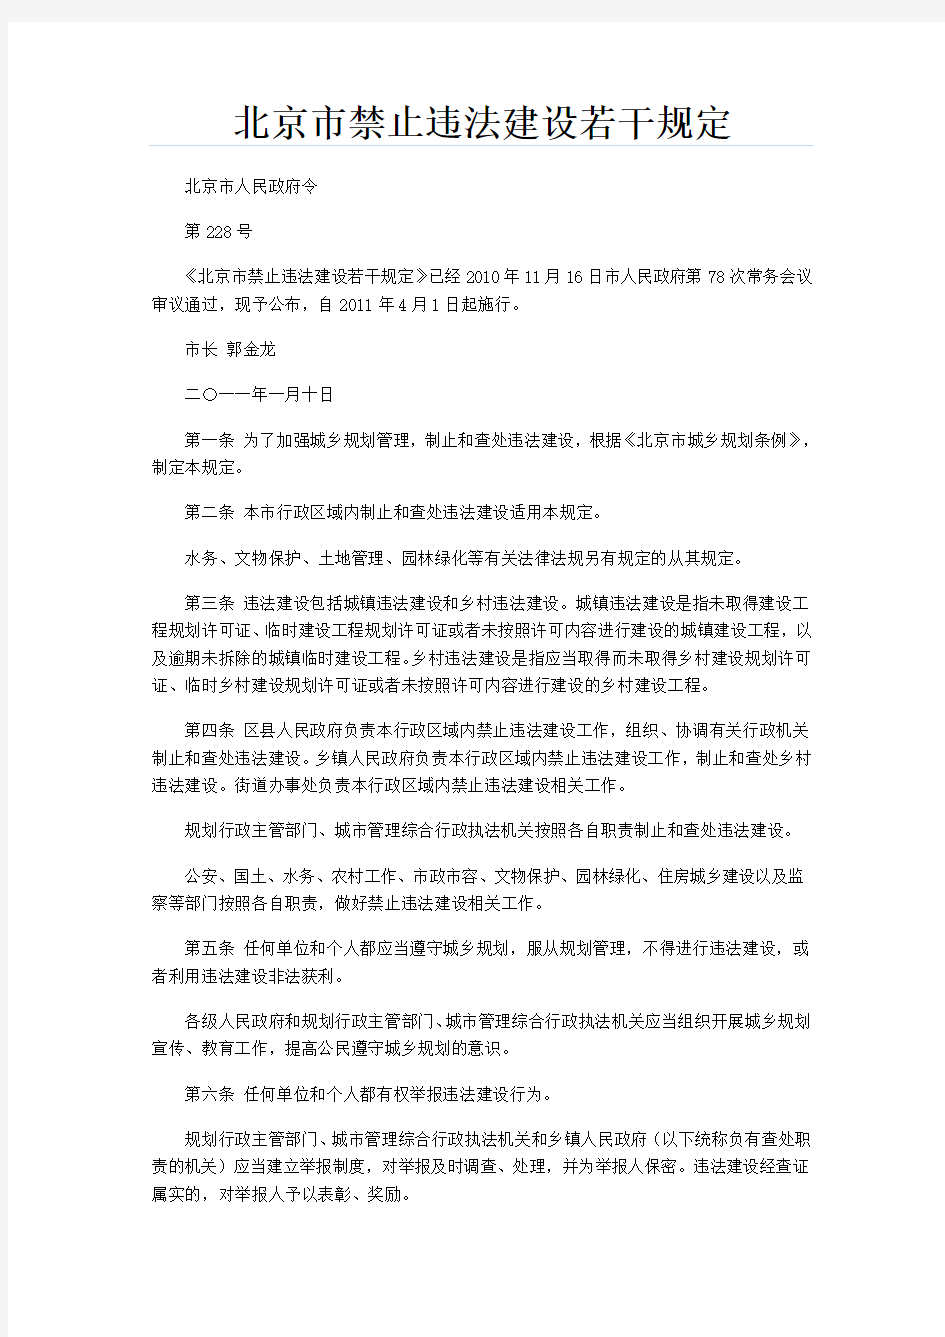 北京市禁止违法建设若干规定